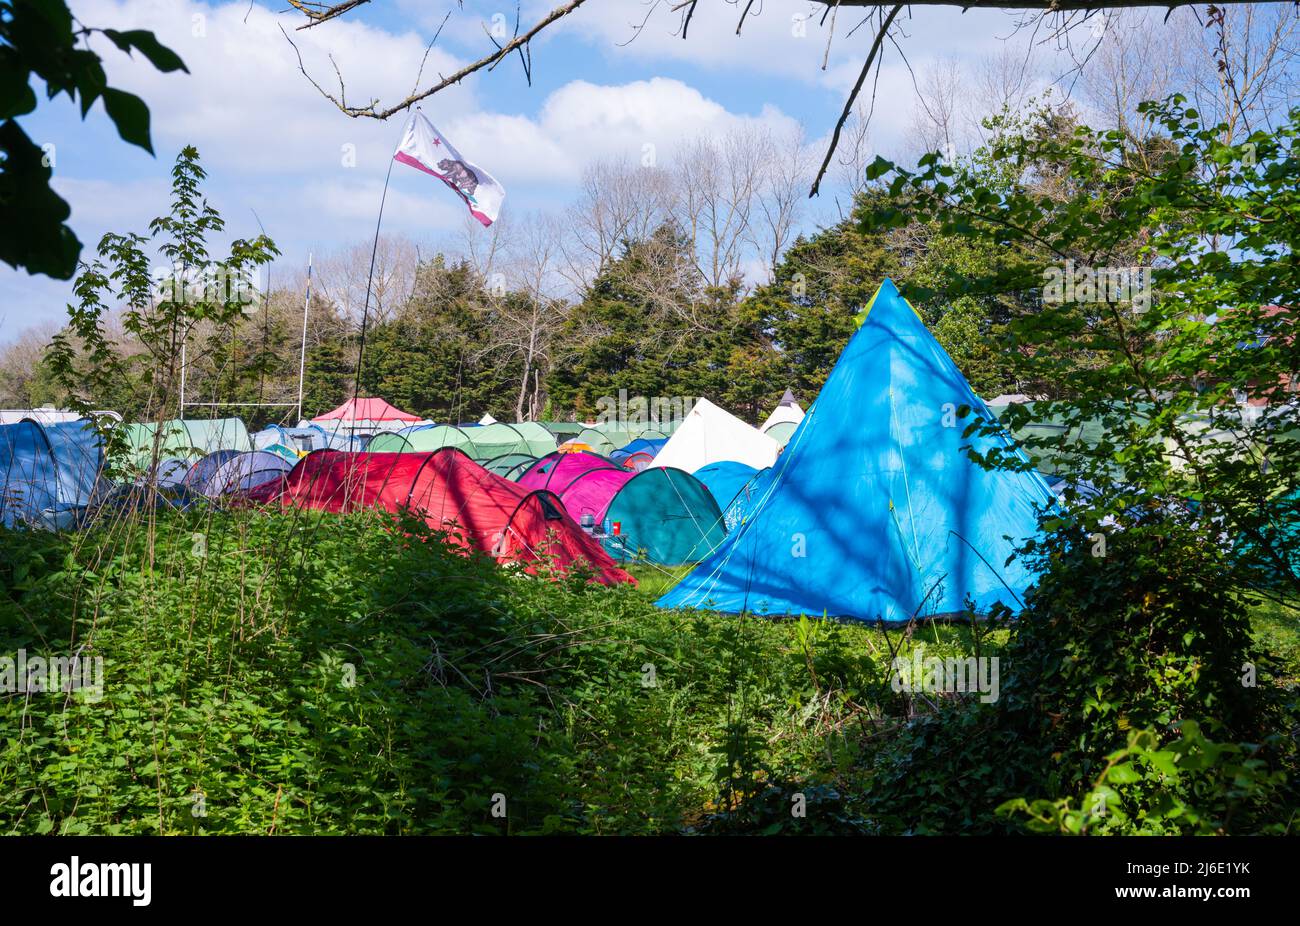 Plusieurs petites tentes de différentes couleurs sont mises en place dans un champ dans le cadre d'un voyage ou d'un événement de camping. Banque D'Images